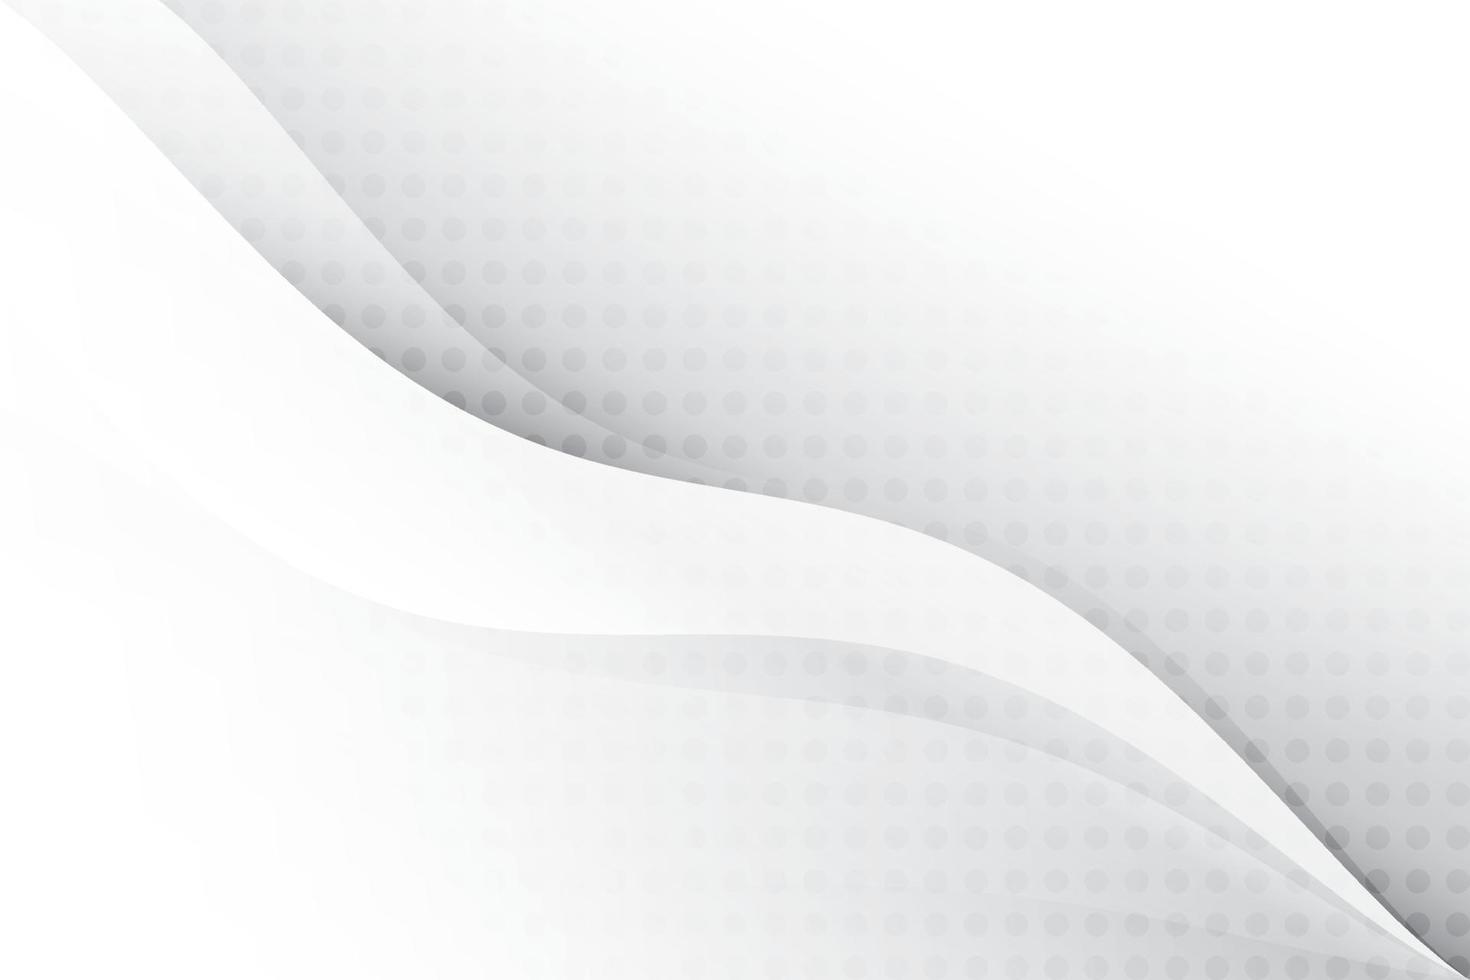 sfondo geometrico astratto di colore bianco e grigio. illustrazione vettoriale. vettore